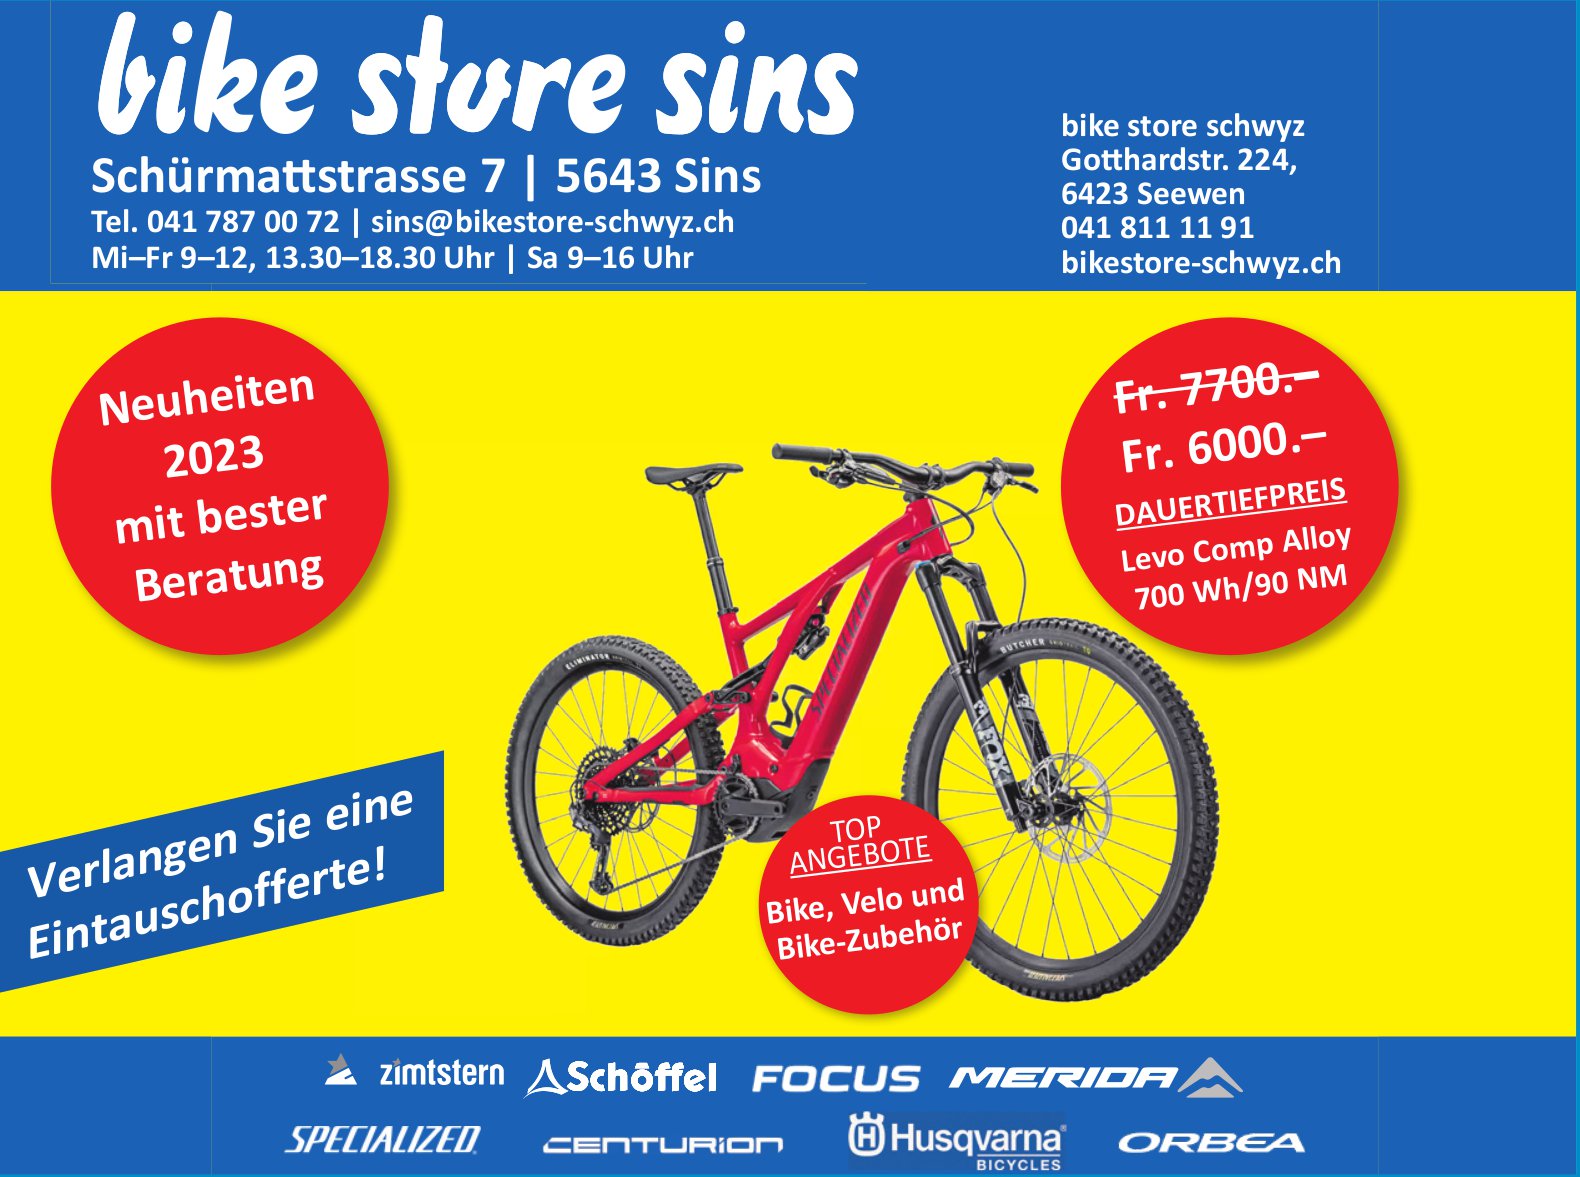 Bike Store, Sins - Eintauschofferte